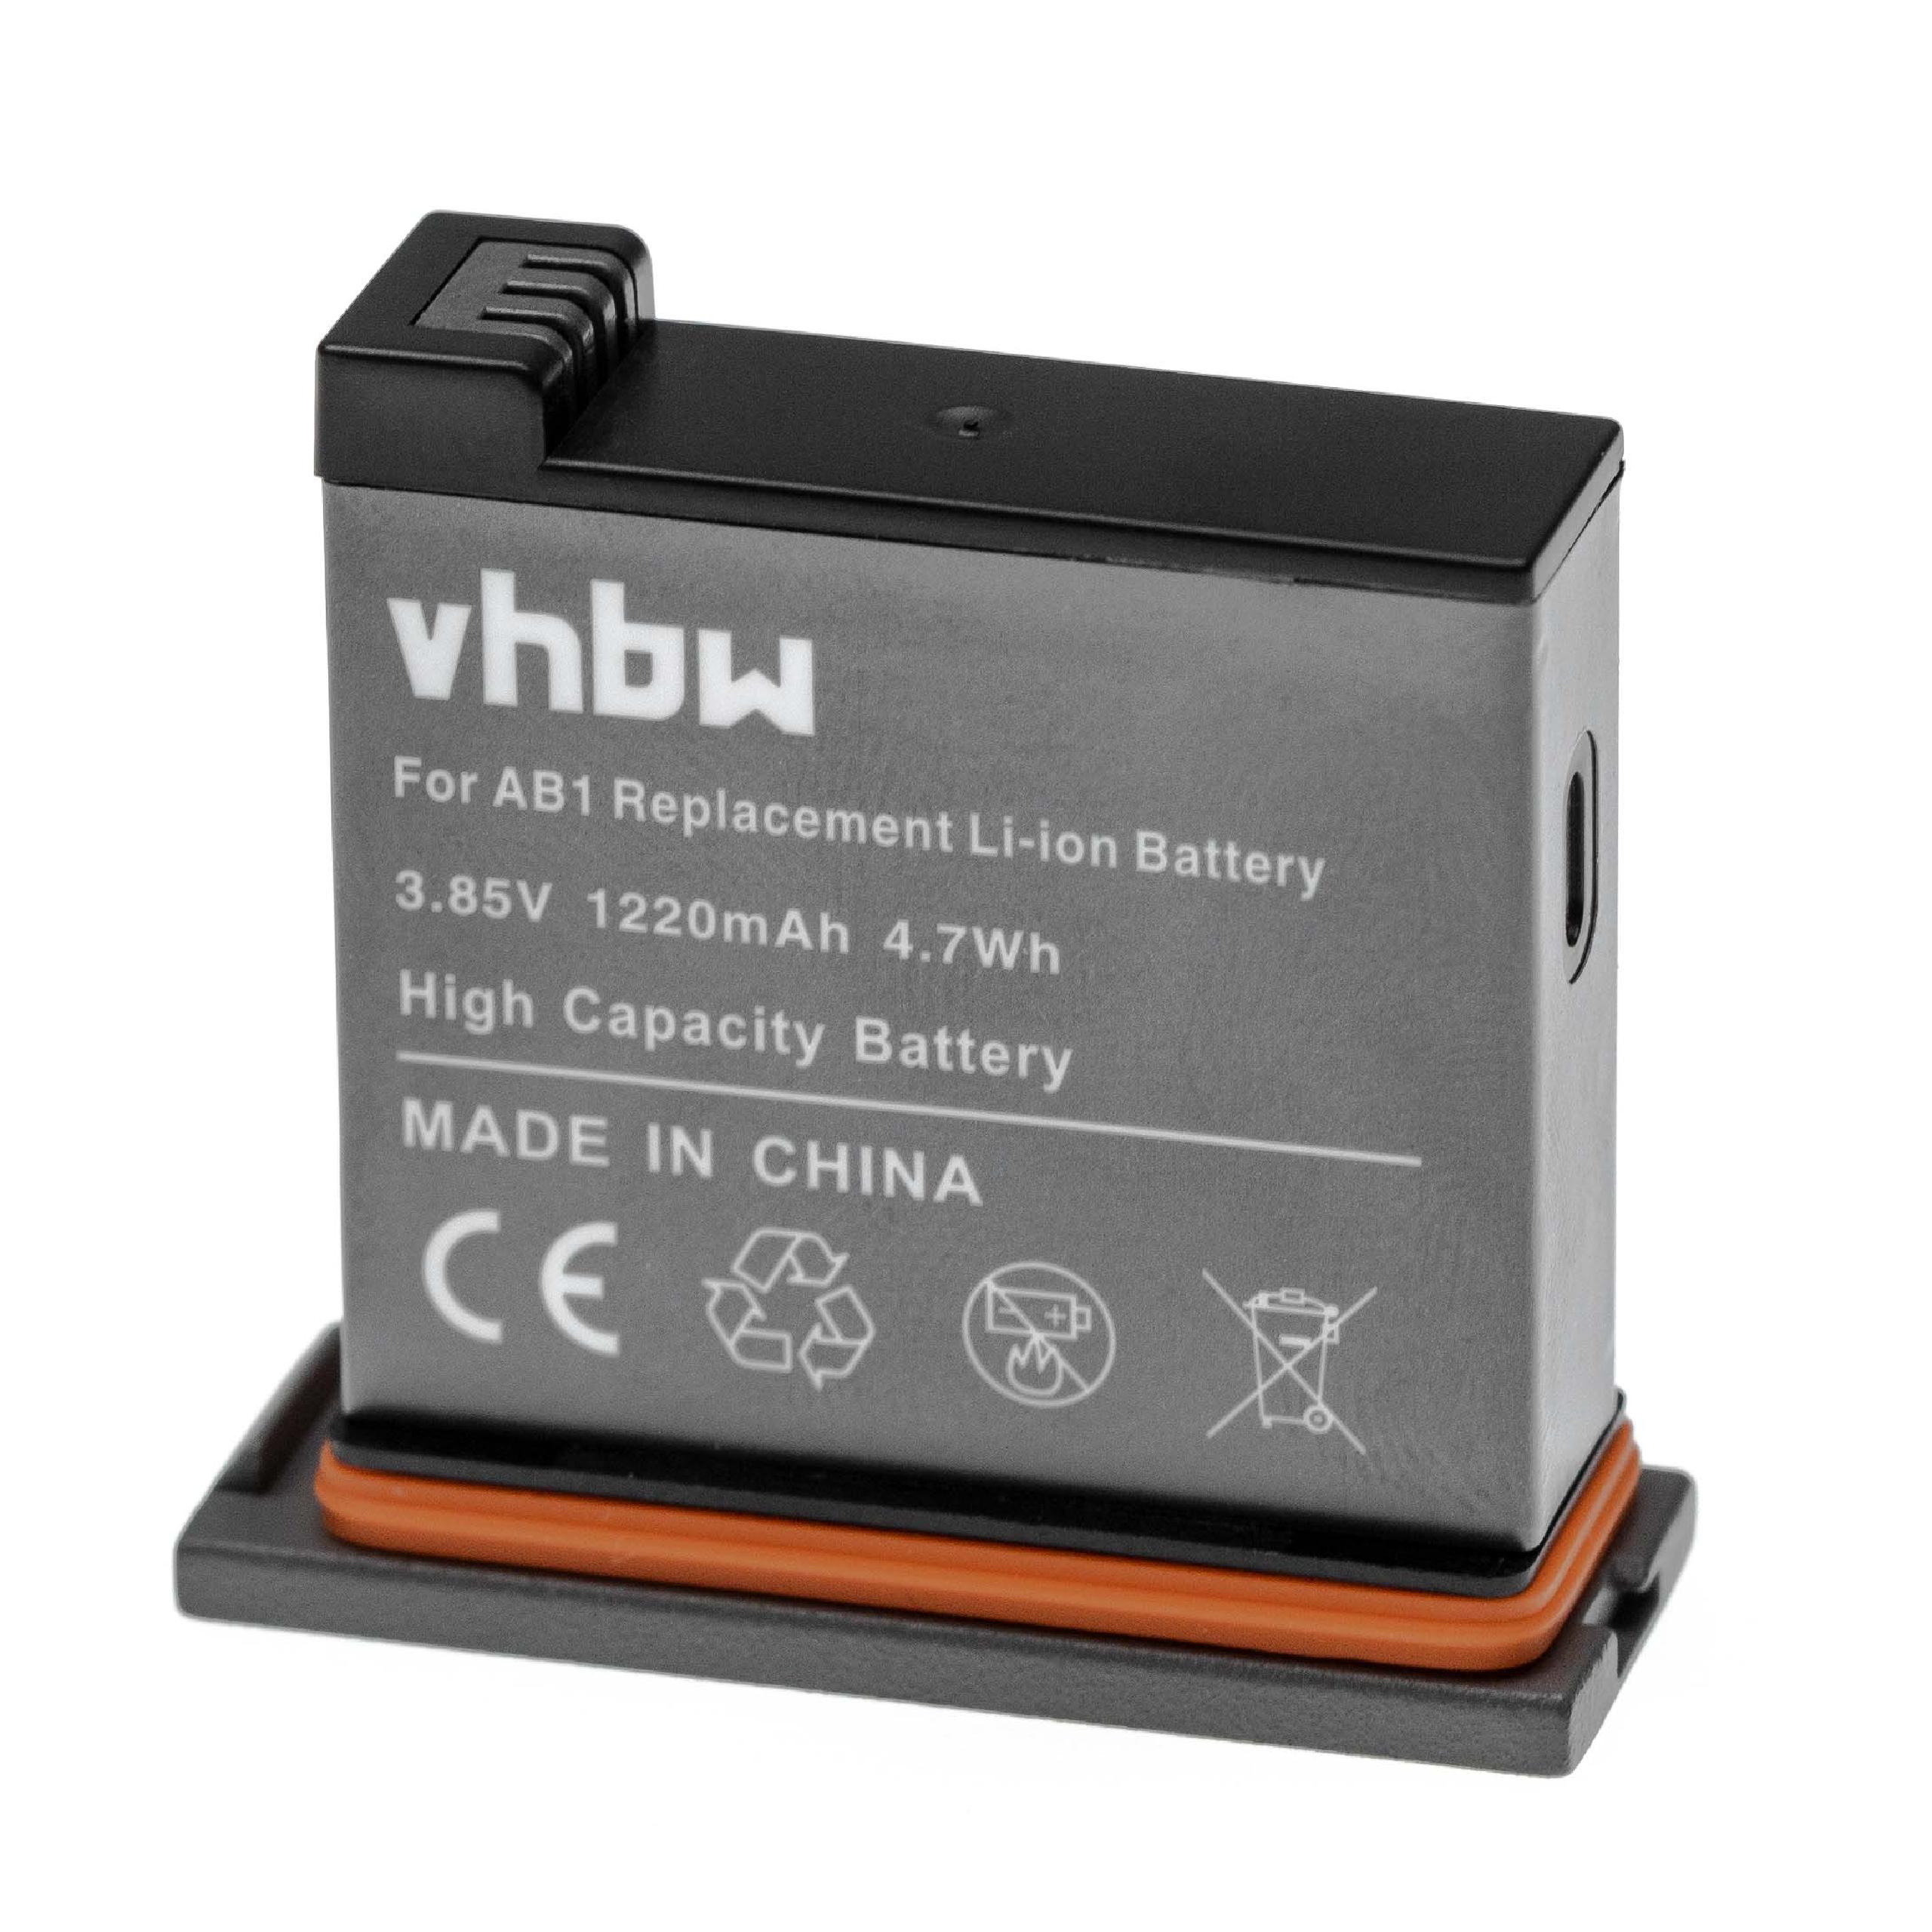 Batterie remplace DJI AB1 pour caméra de poche - 1220mAh 3,85V Li-ion